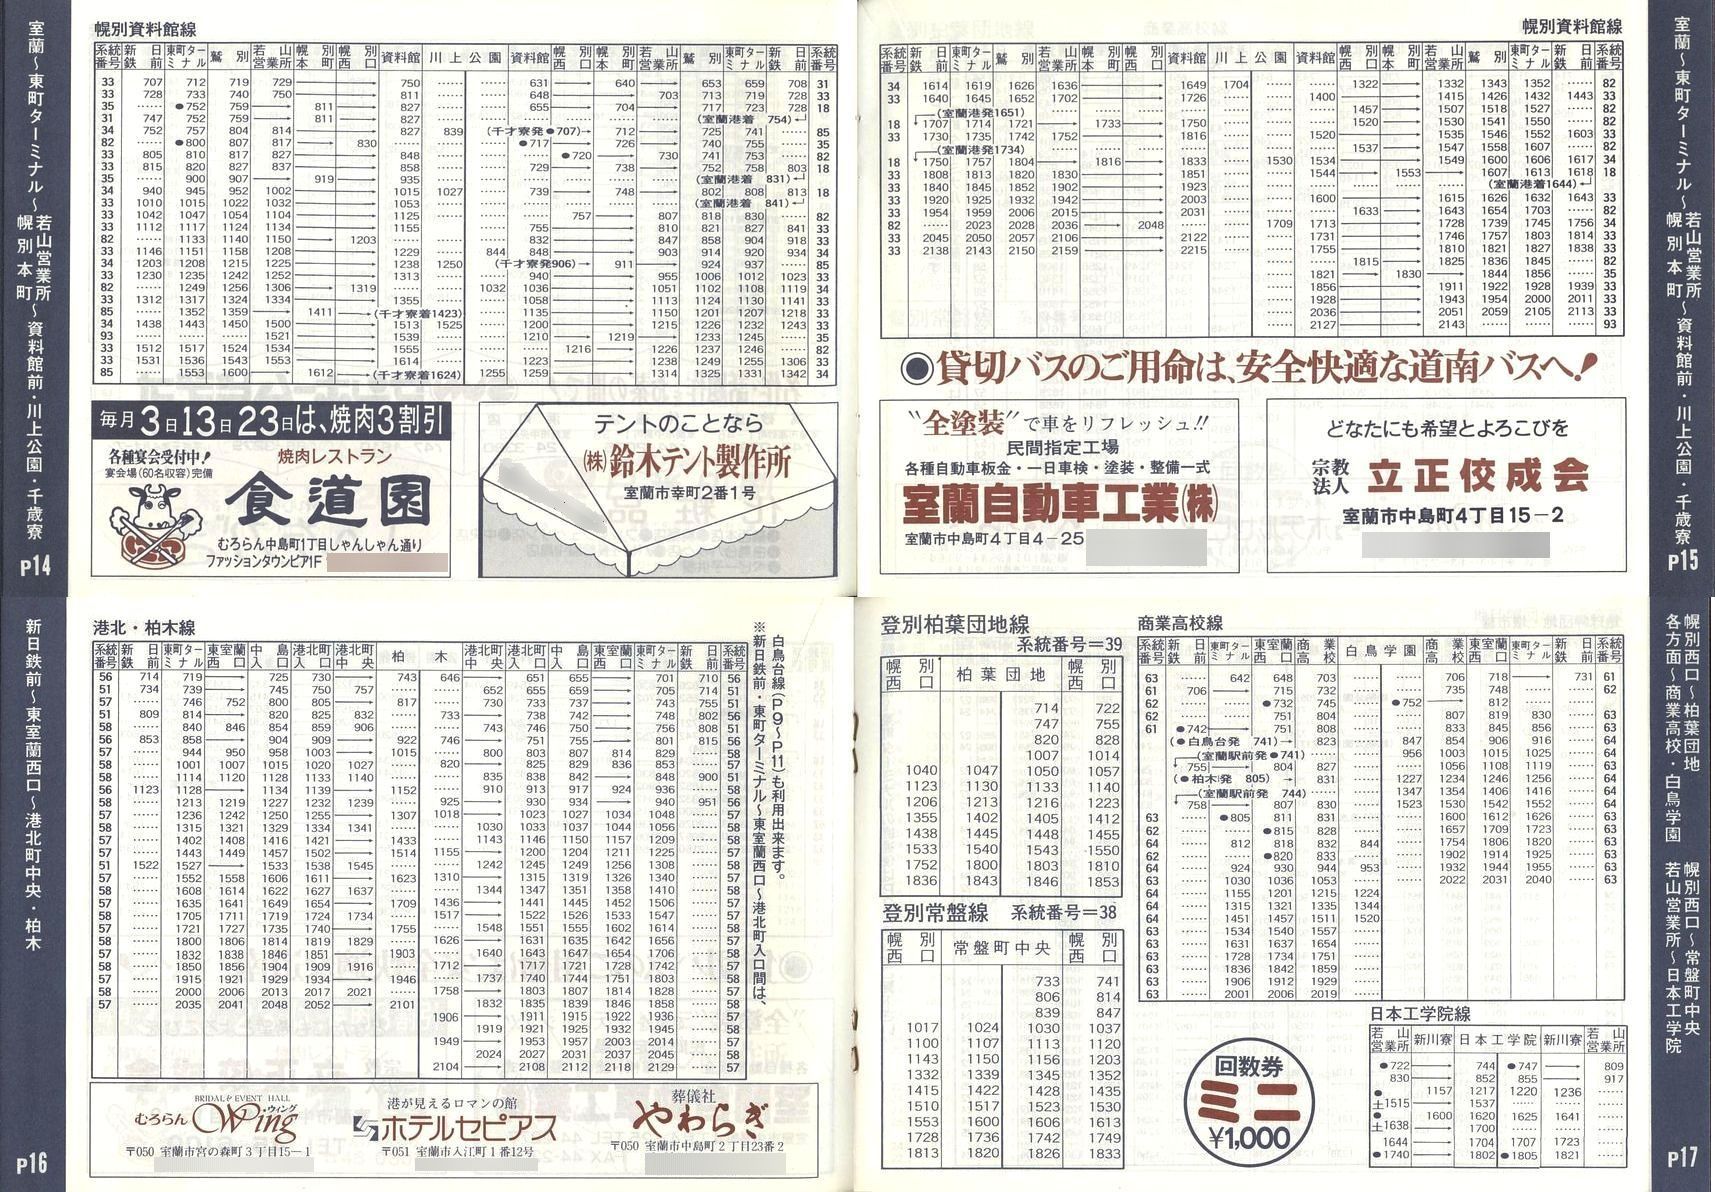 1989-04-01改正_道南バス_室蘭市内線冊子時刻表14-17